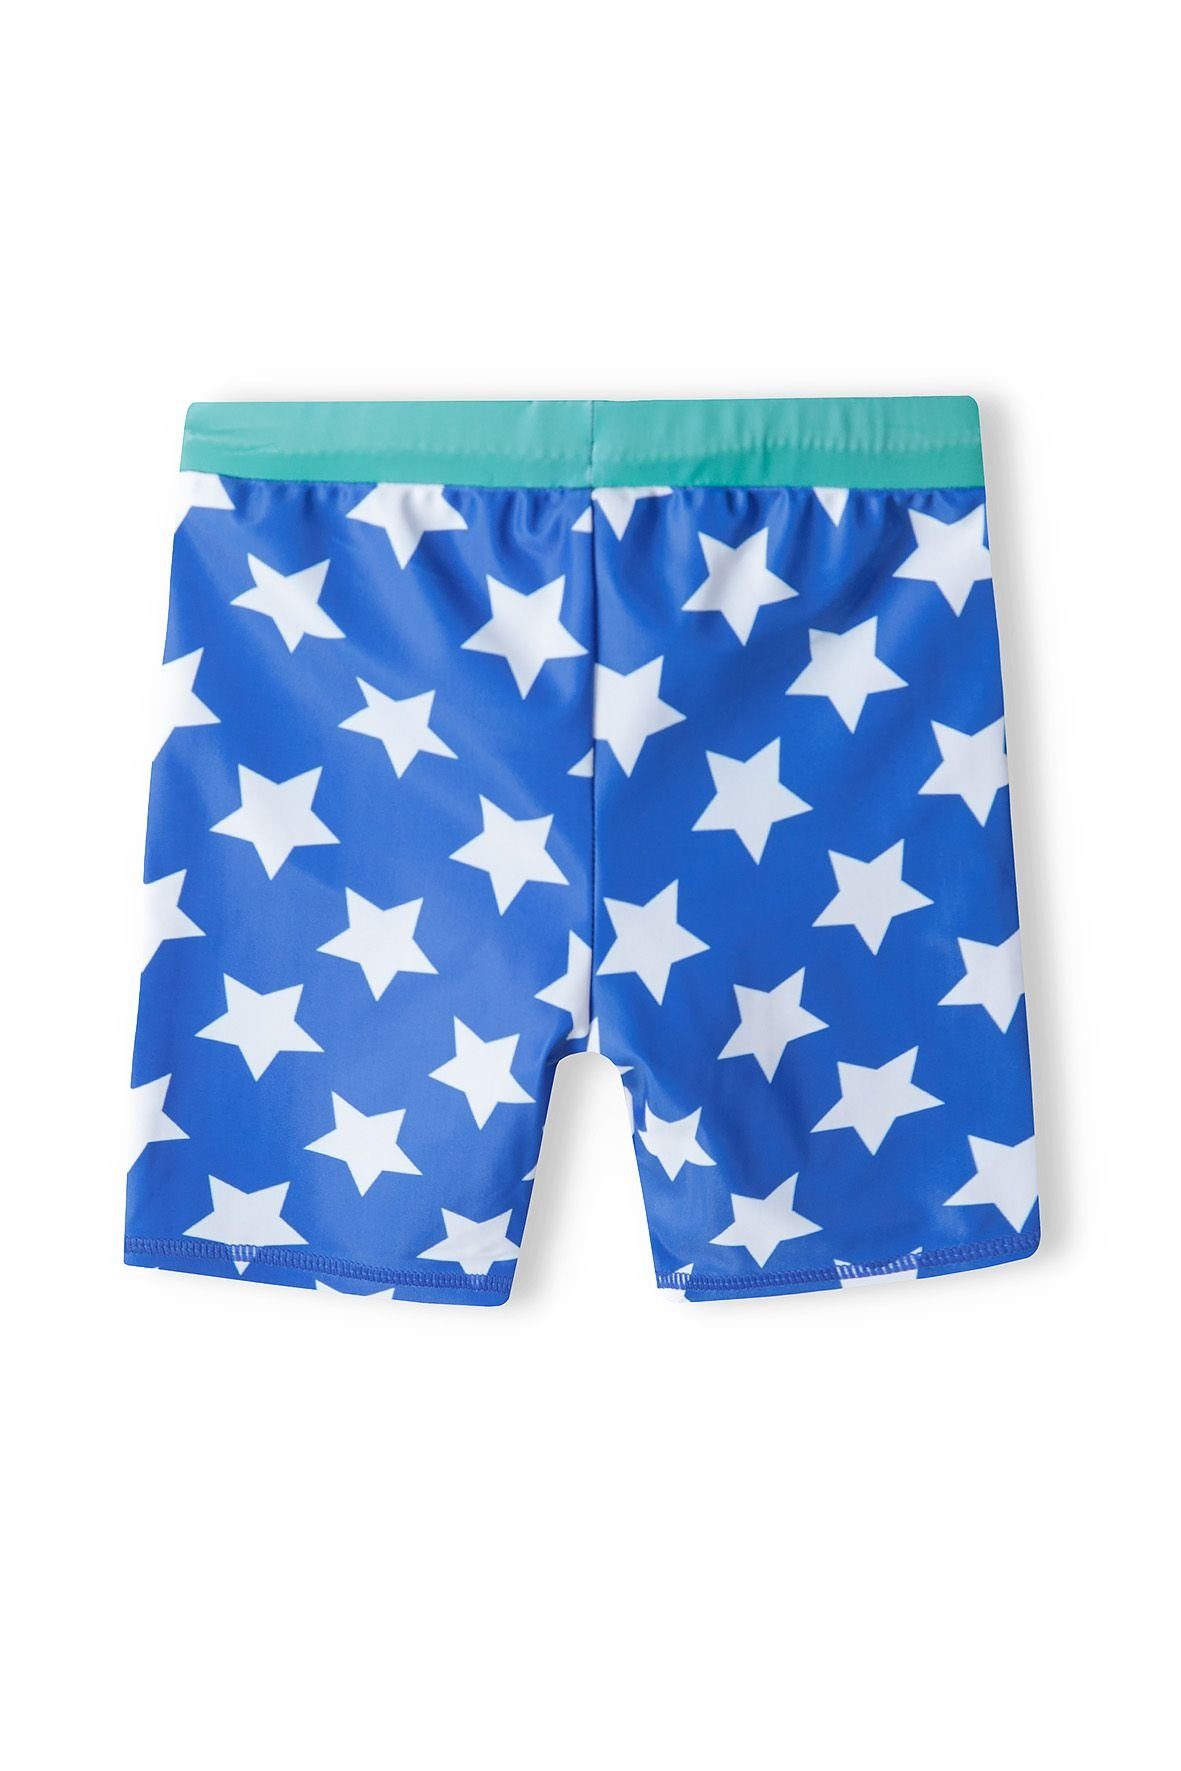 mit Schwimmanzug Bade-Set Shorts UV Dunkelblau (12m-8y) Top und Schutz MINOTI